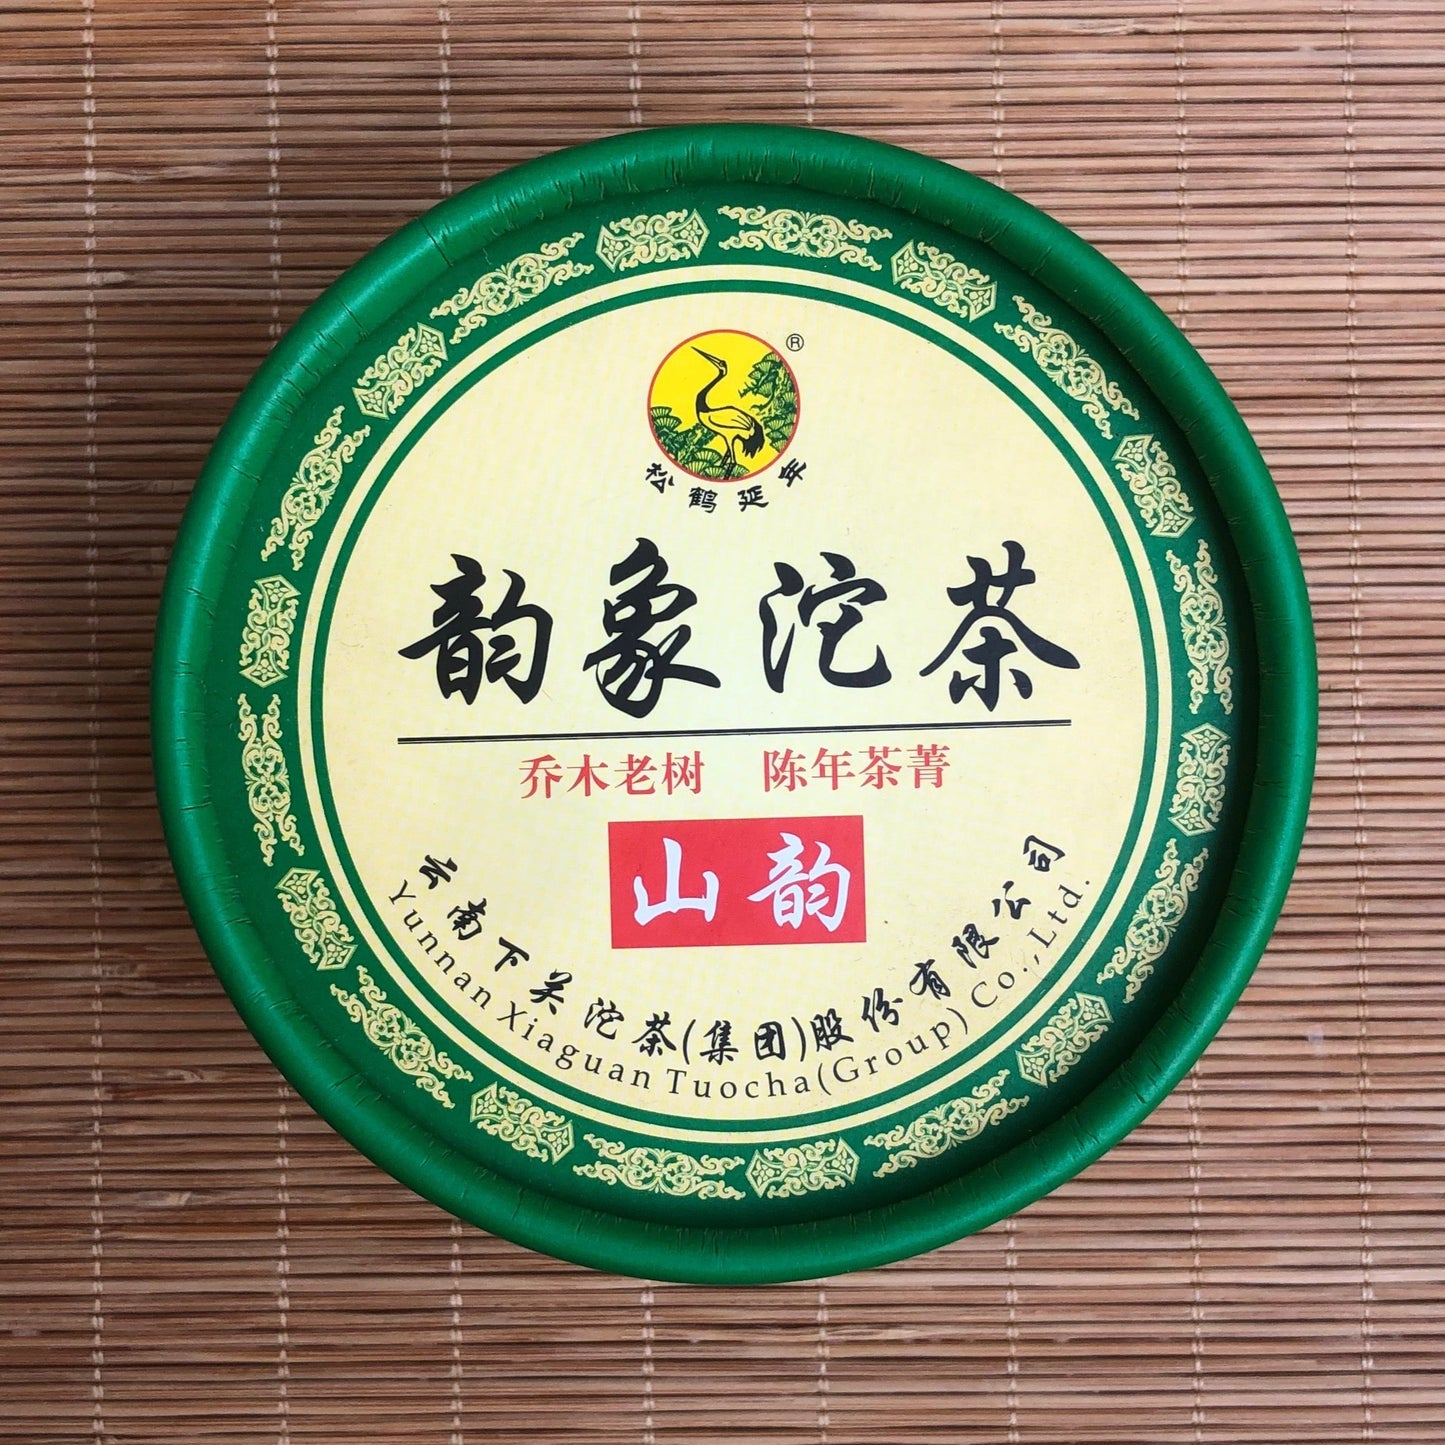 Xiaguan Tuo Cha – Thé cru –下官沱茶  – Sheng Puer  – 2013 - Lemeilleurthedechine